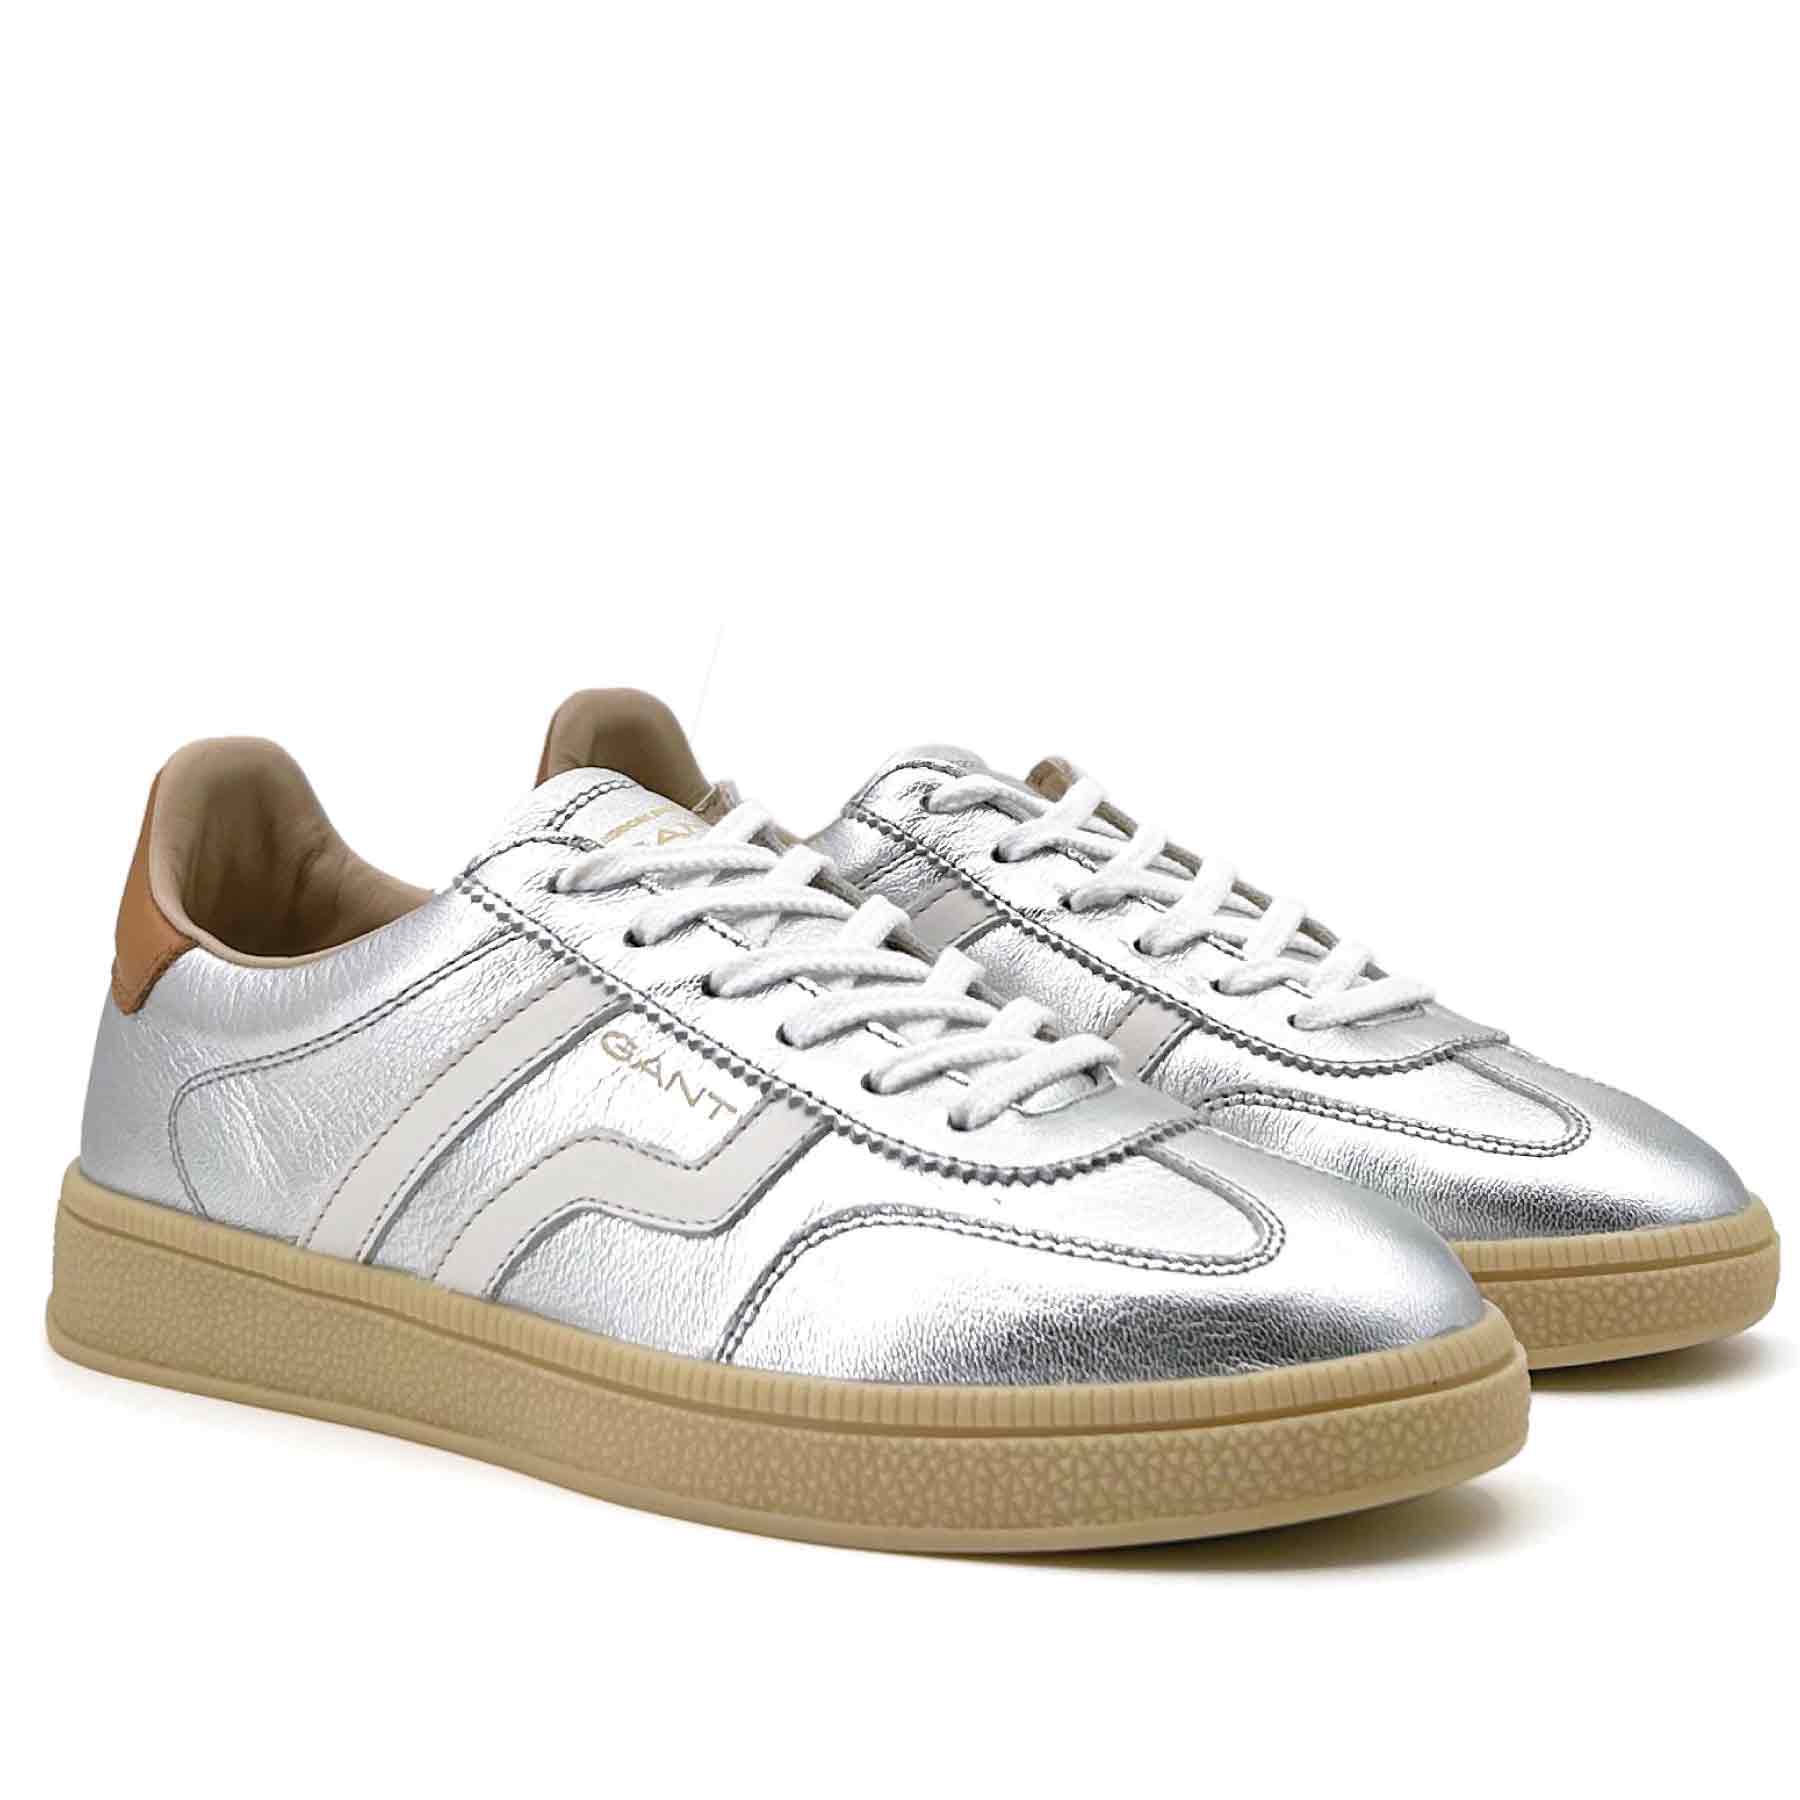 Cuzima Sneaker Napa Leather Silver